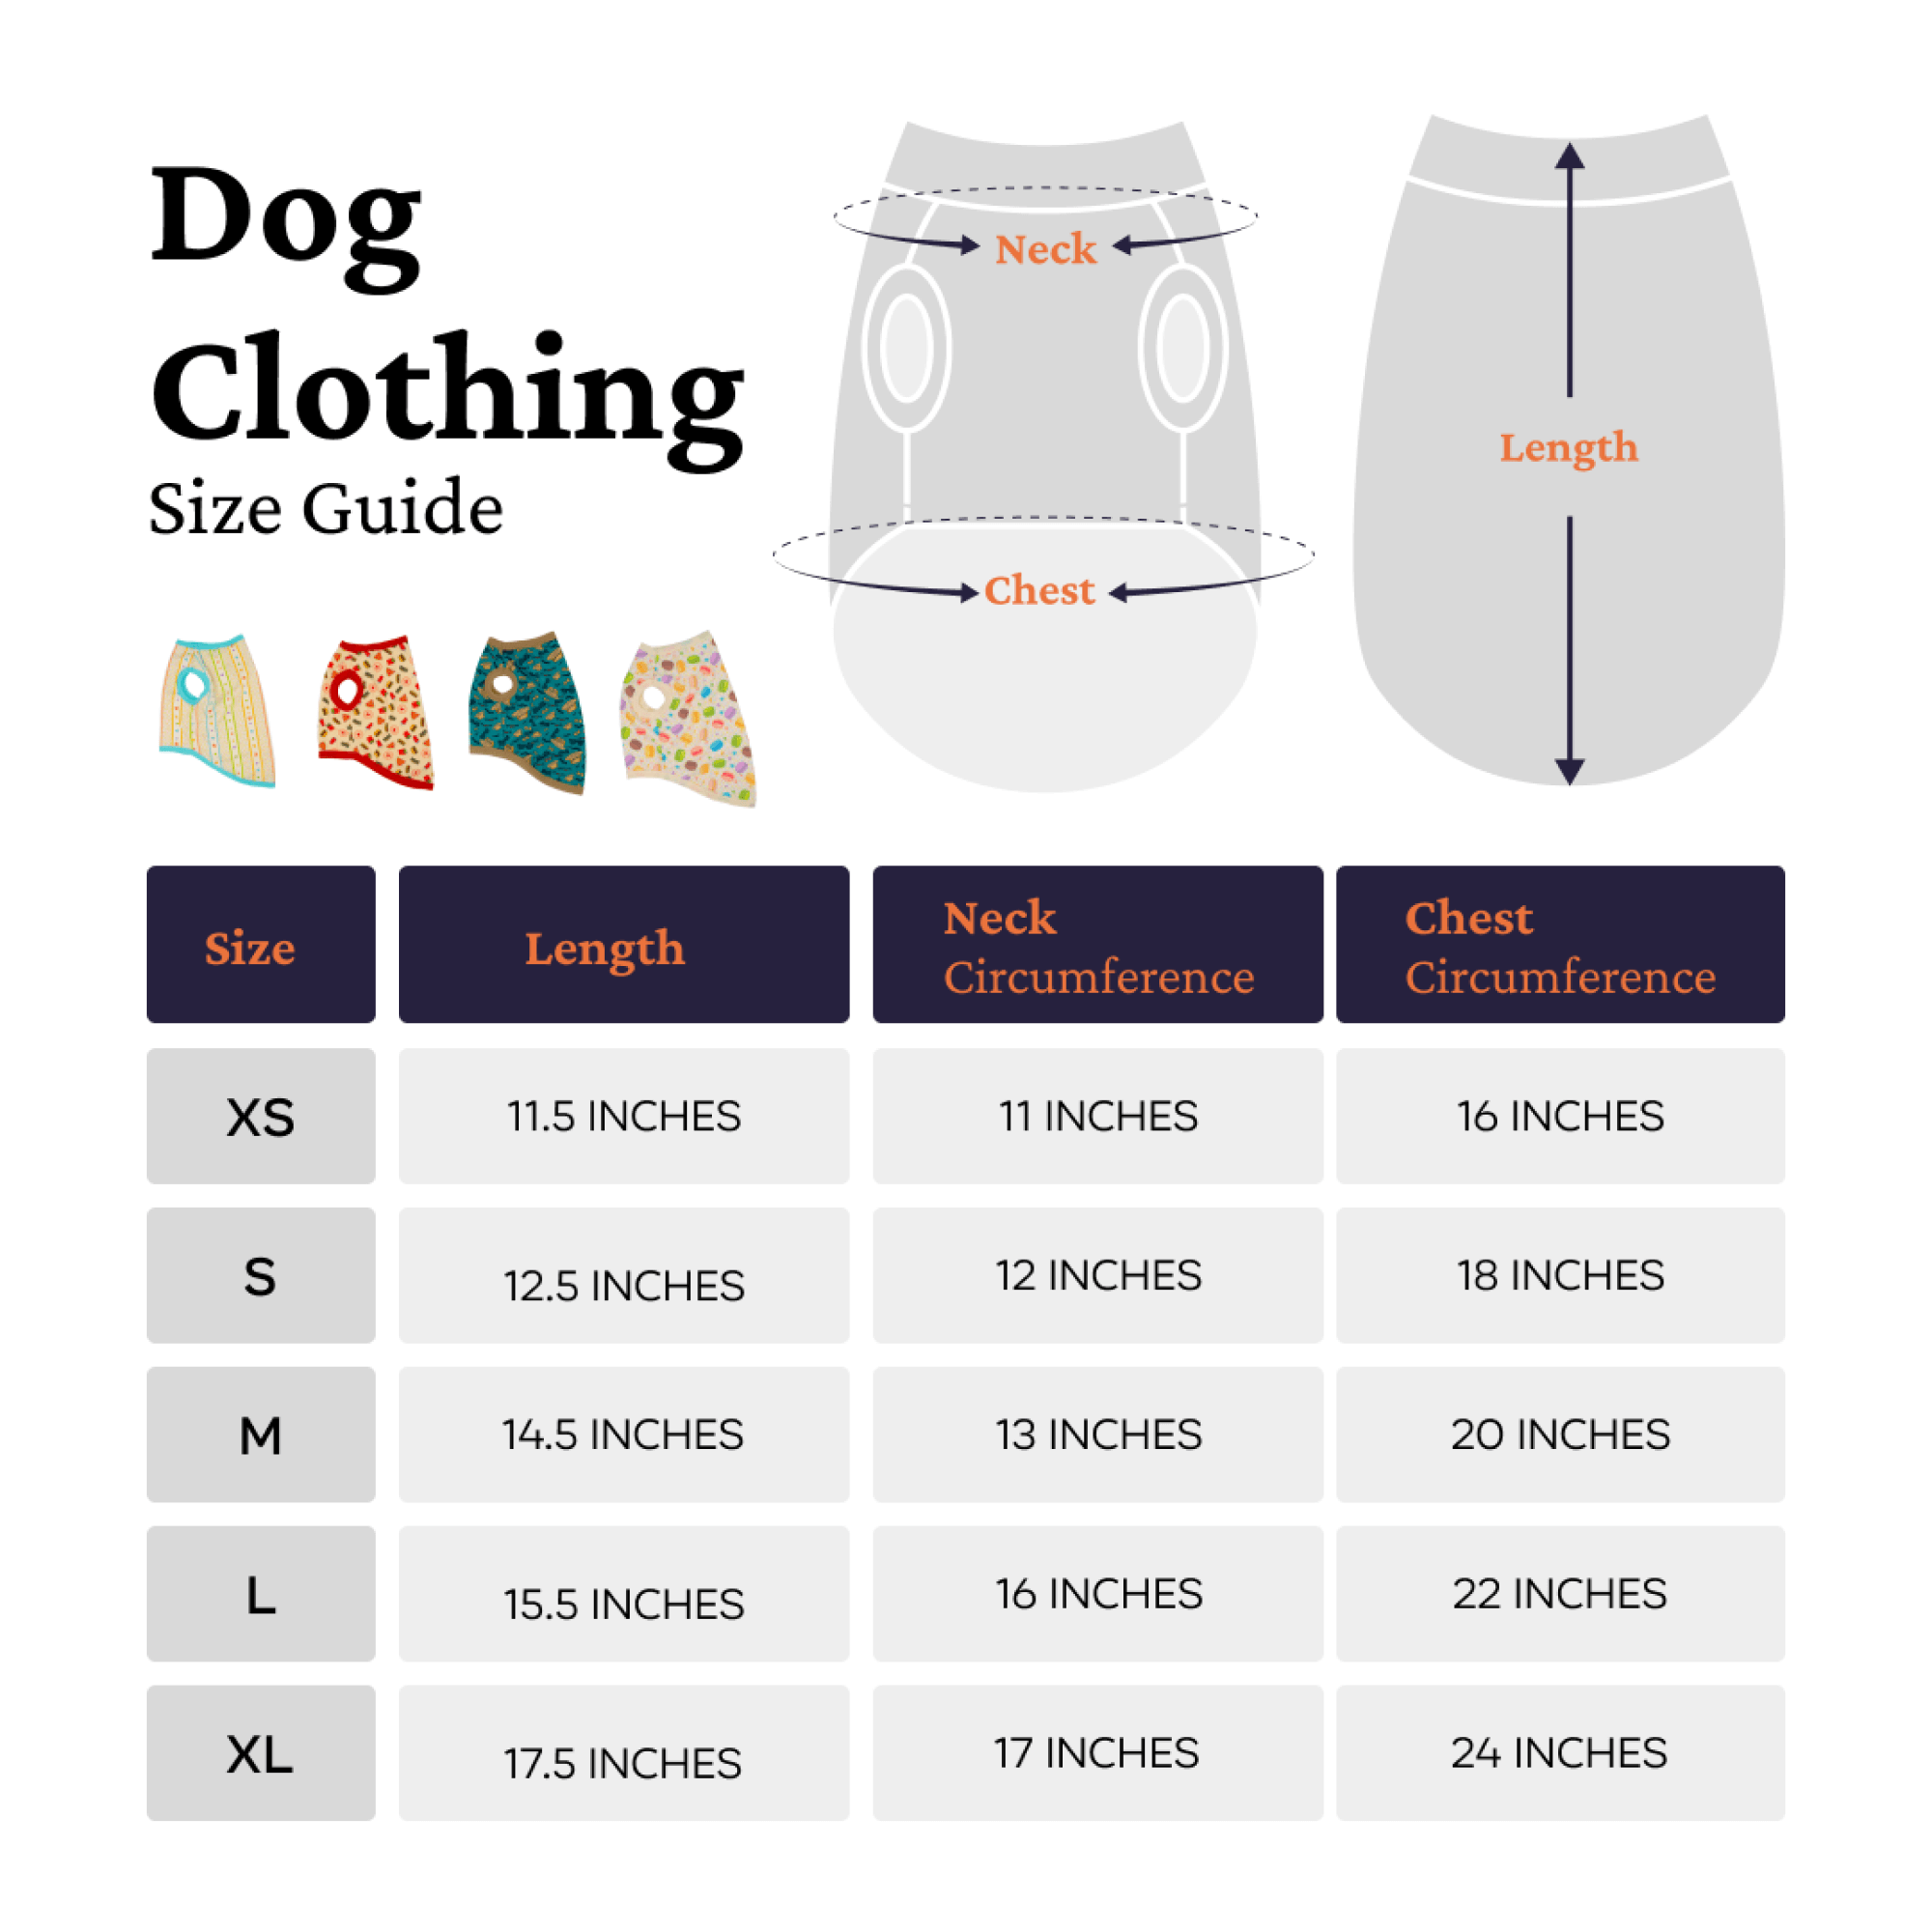 Dog clothing size guide